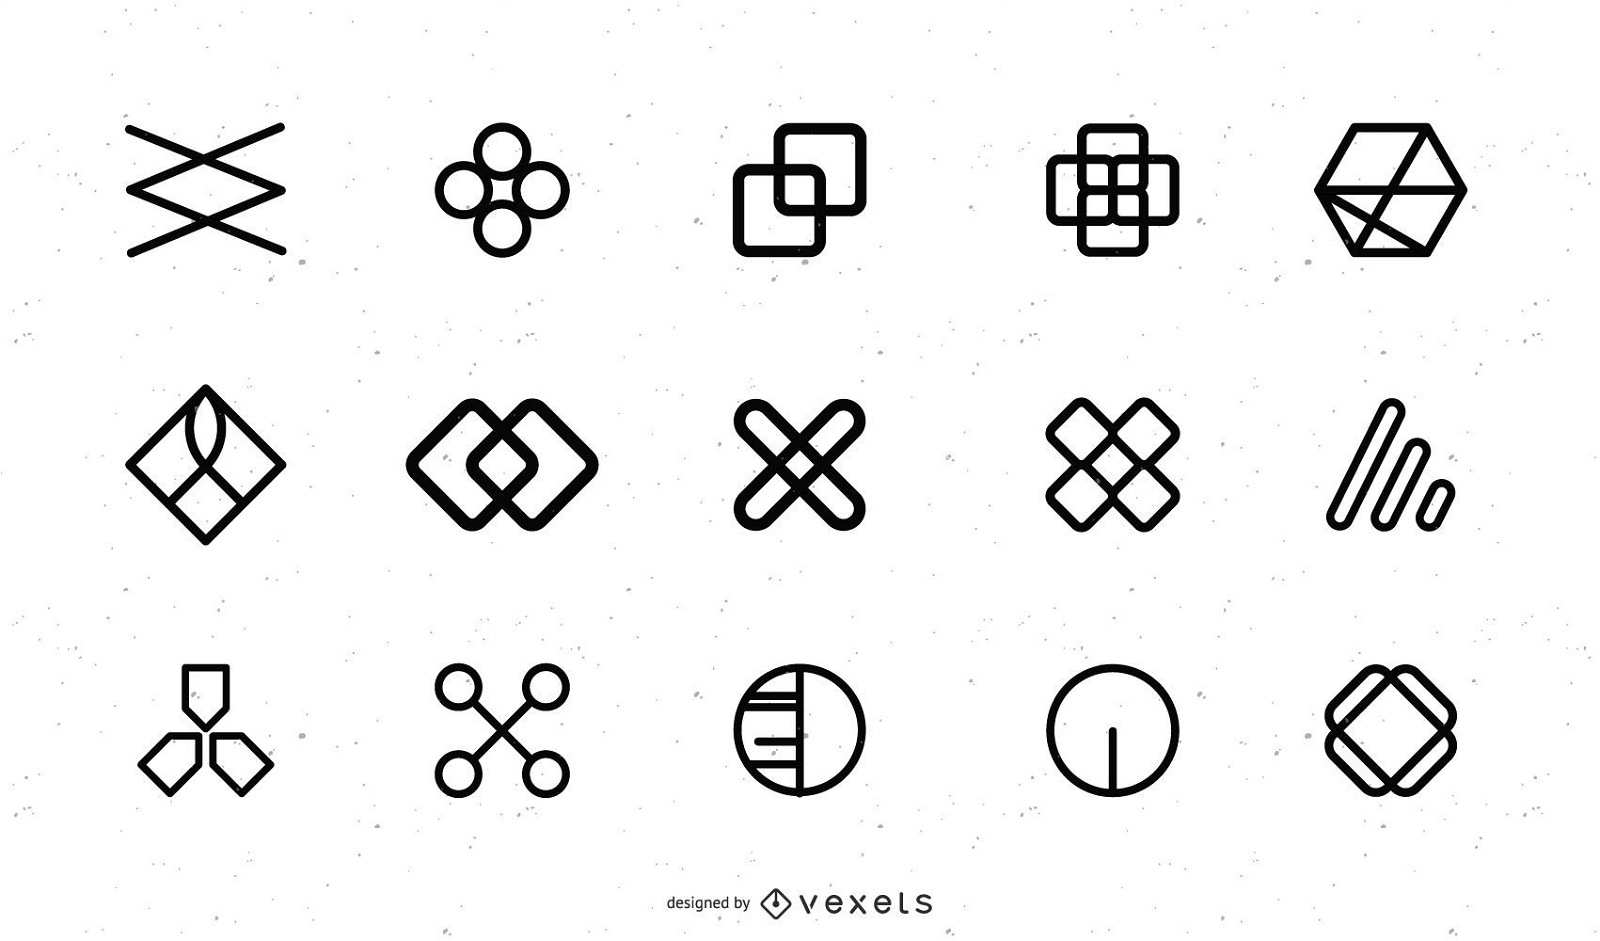 Pack de elementos de diseño de iconos vectoriales gratis 01